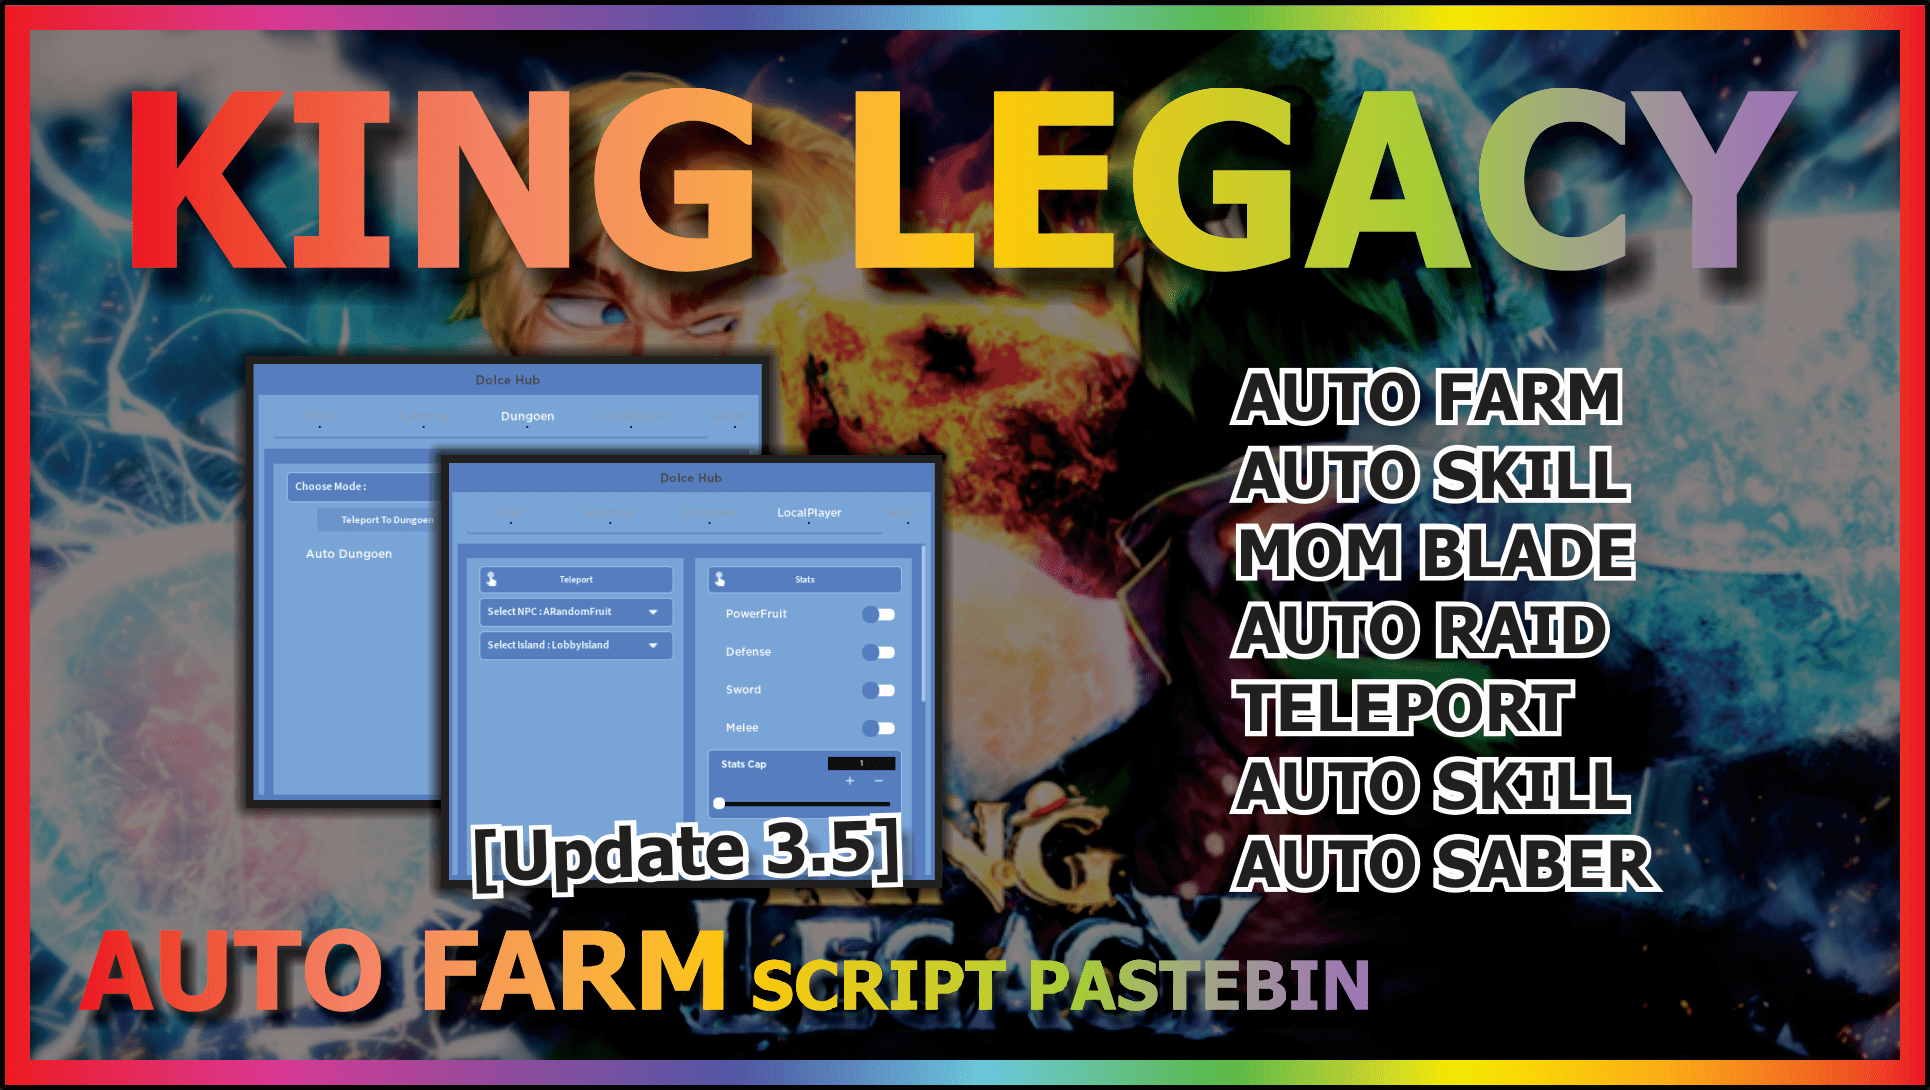 King Legacy Script Pastebin – ScriptPastebin